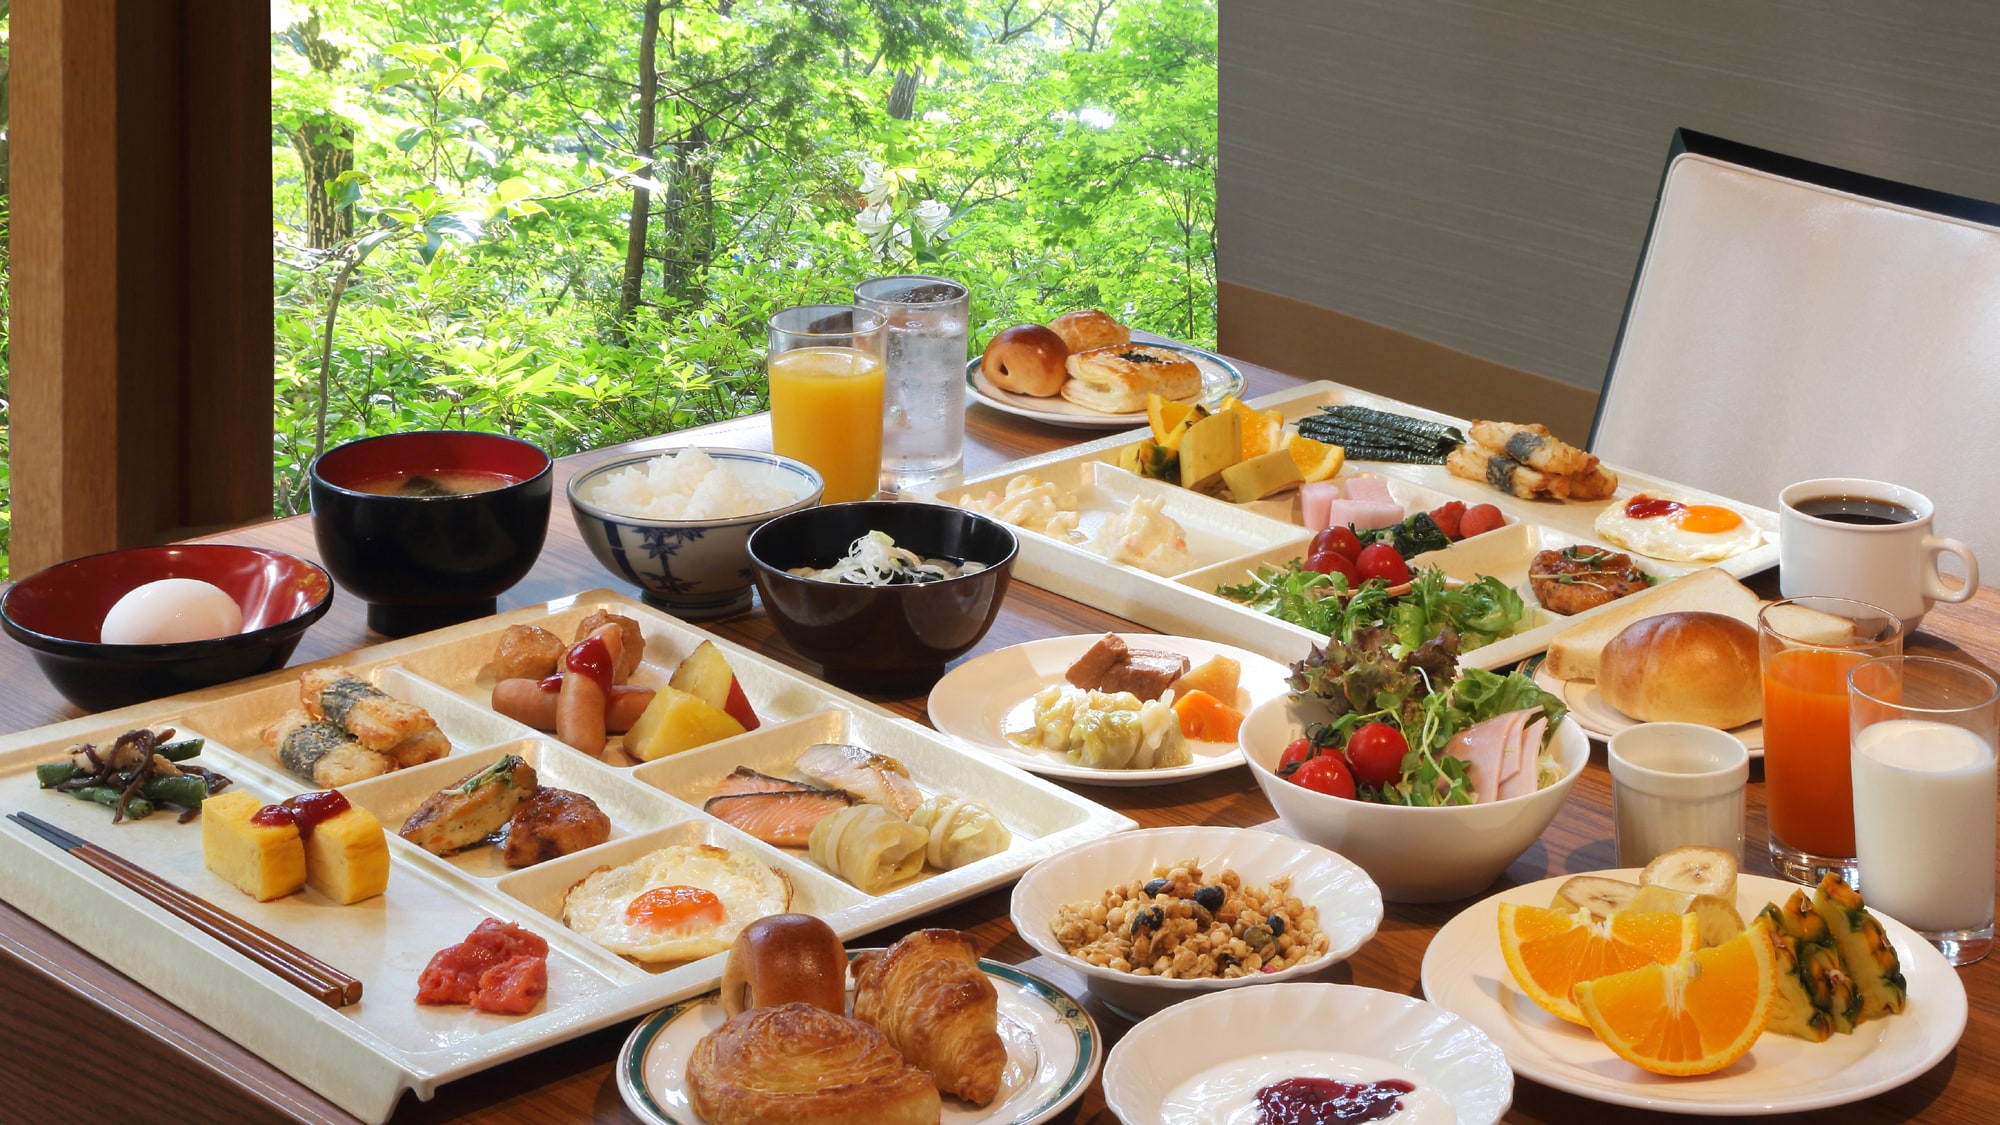 ◆ 아침 식사 뷔페 일례